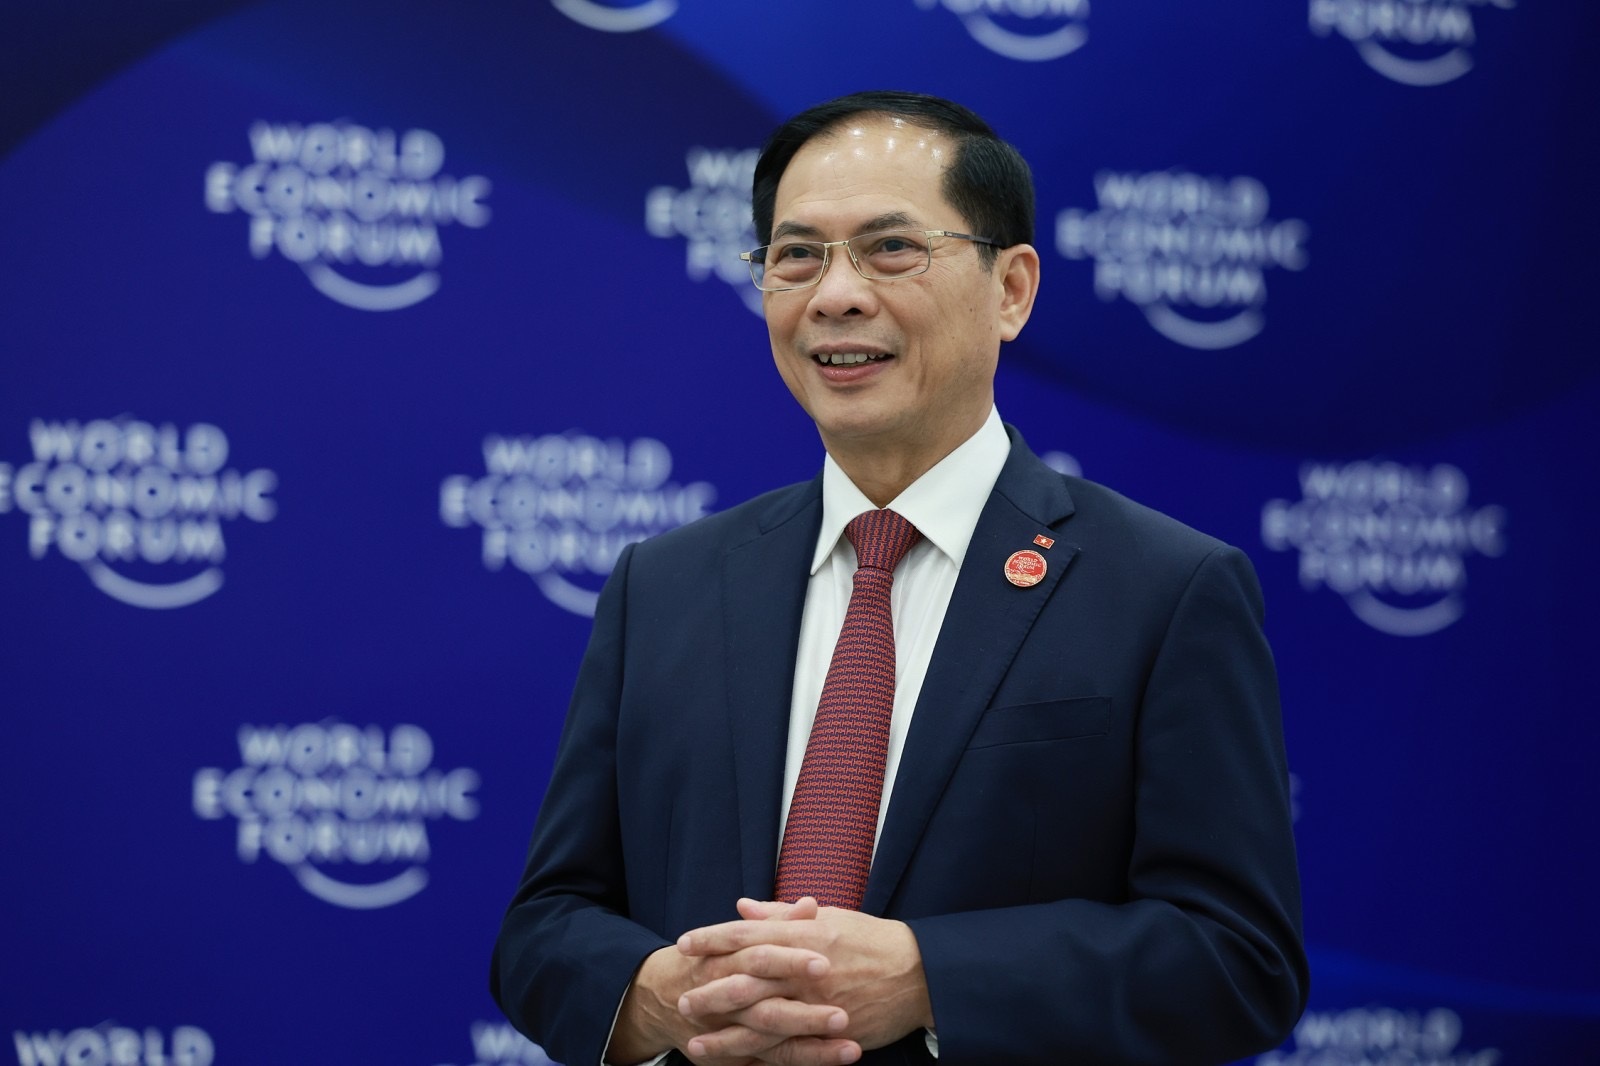 Điểm nhấn trong chuyến công tác Trung Quốc của Thủ tướng Phạm Minh Chính - 1